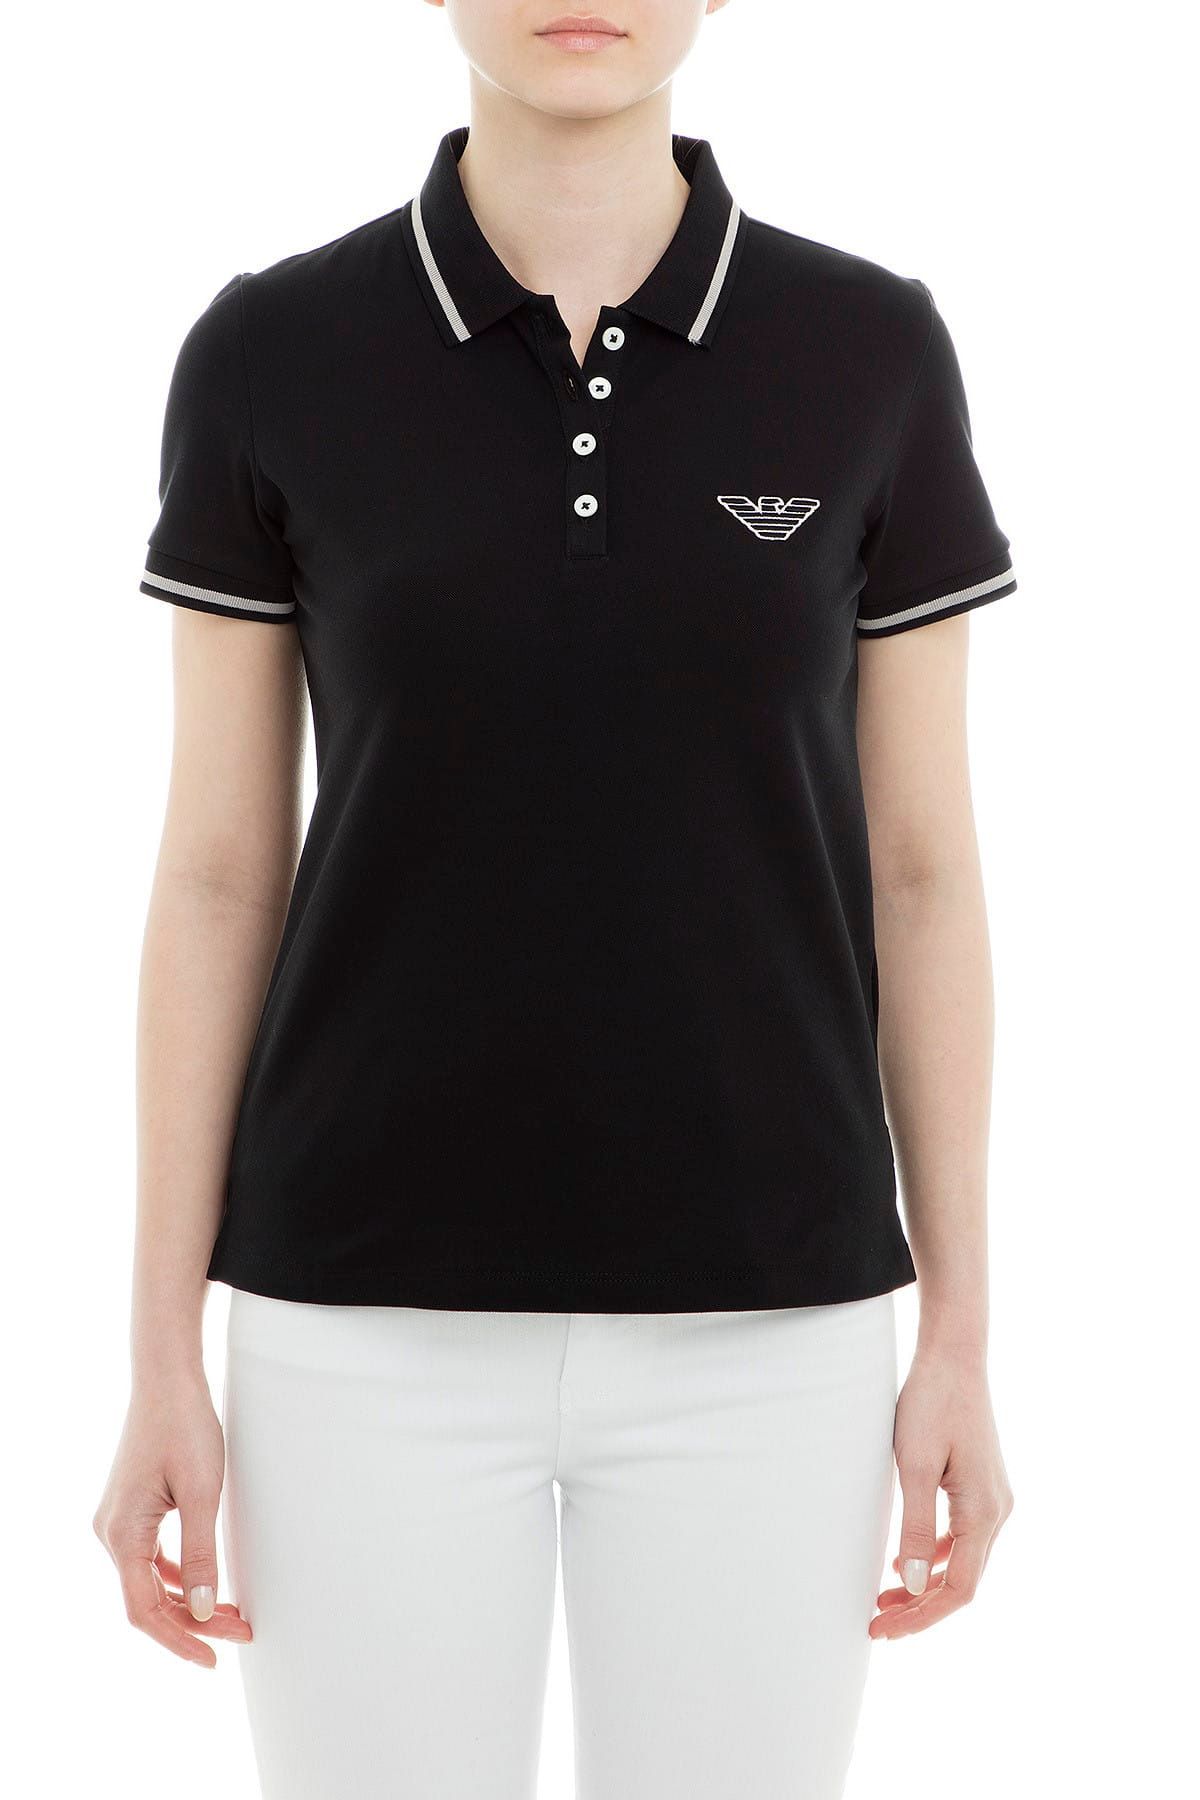 Emporio Armani Kadın Siyah Polo Yaka T-Shirt 3G2M61 2JBXZ 0999